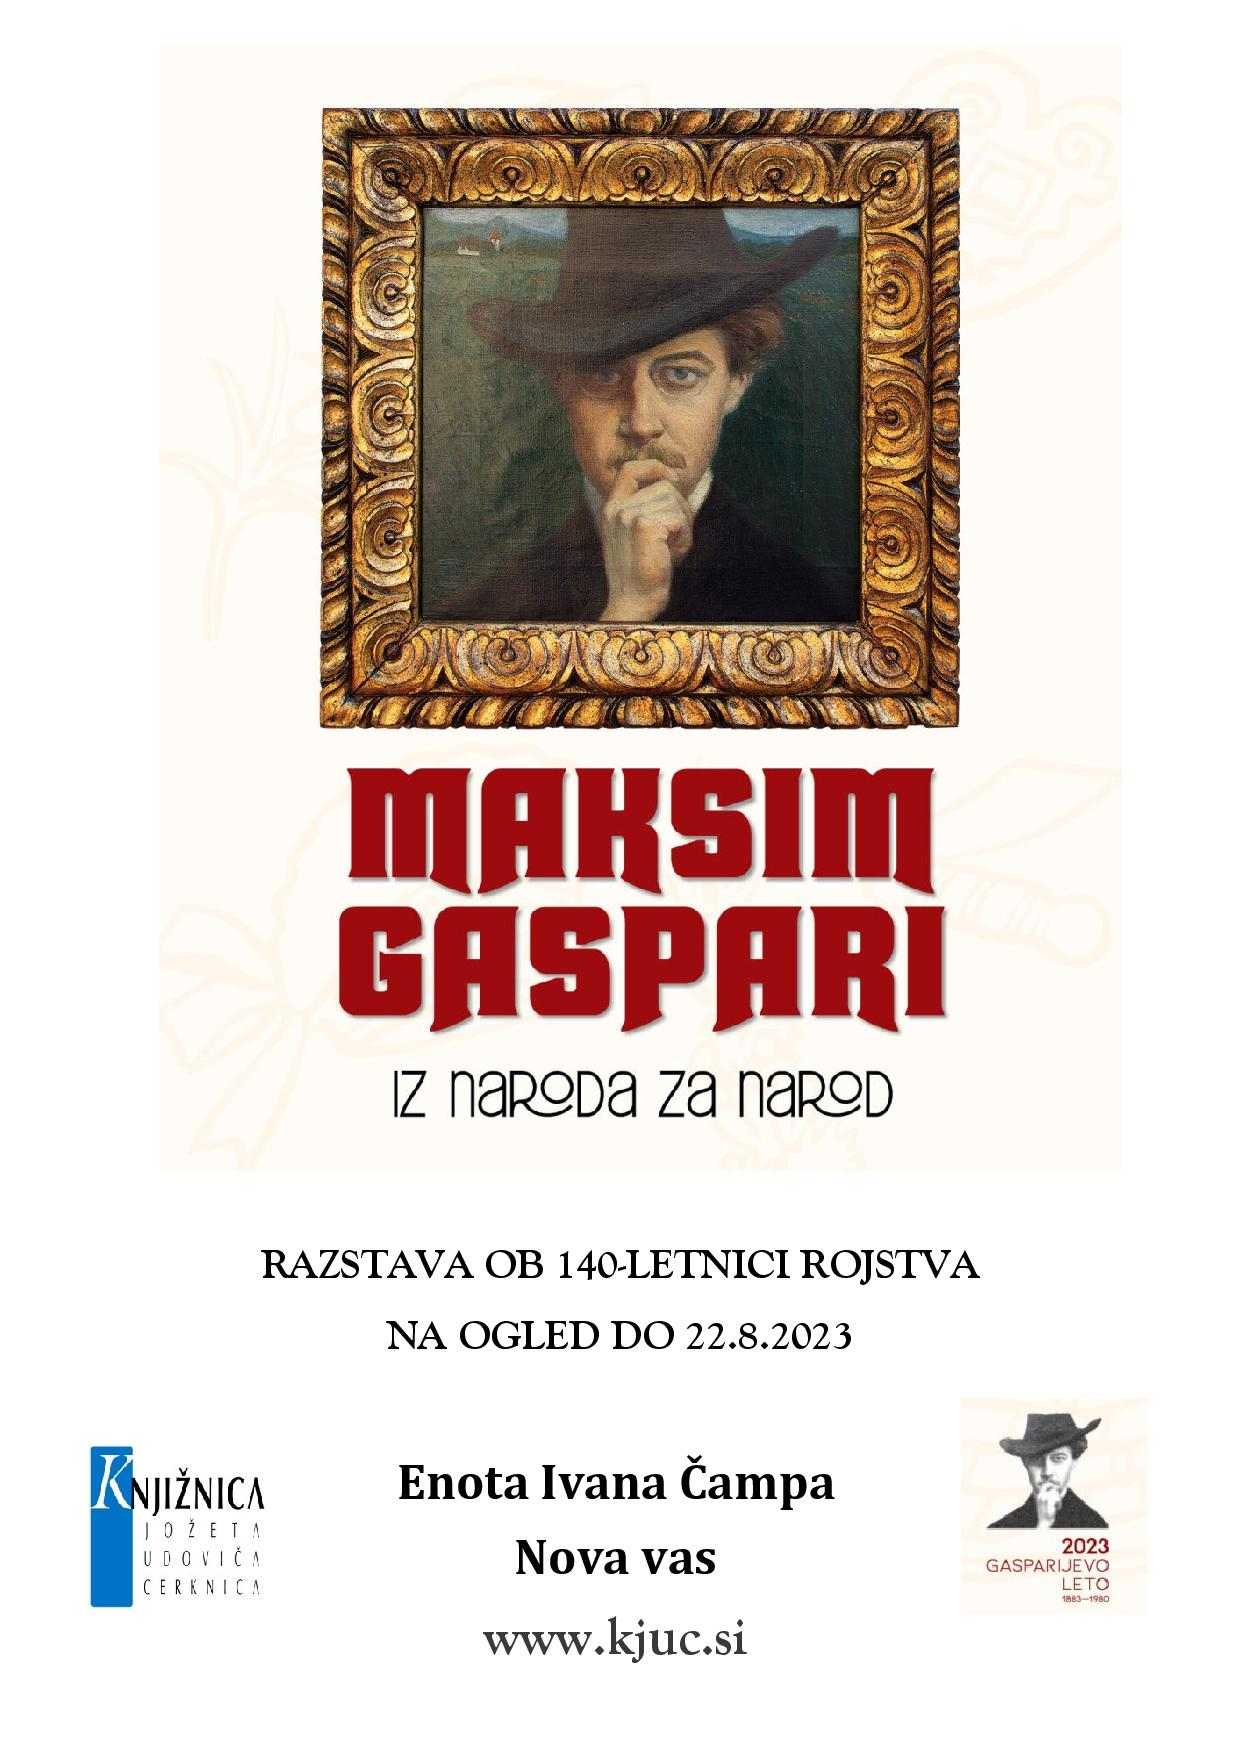 gaspari razstava page 001 - Maksim Gaspari - razstava ob 140-letnici rojstva